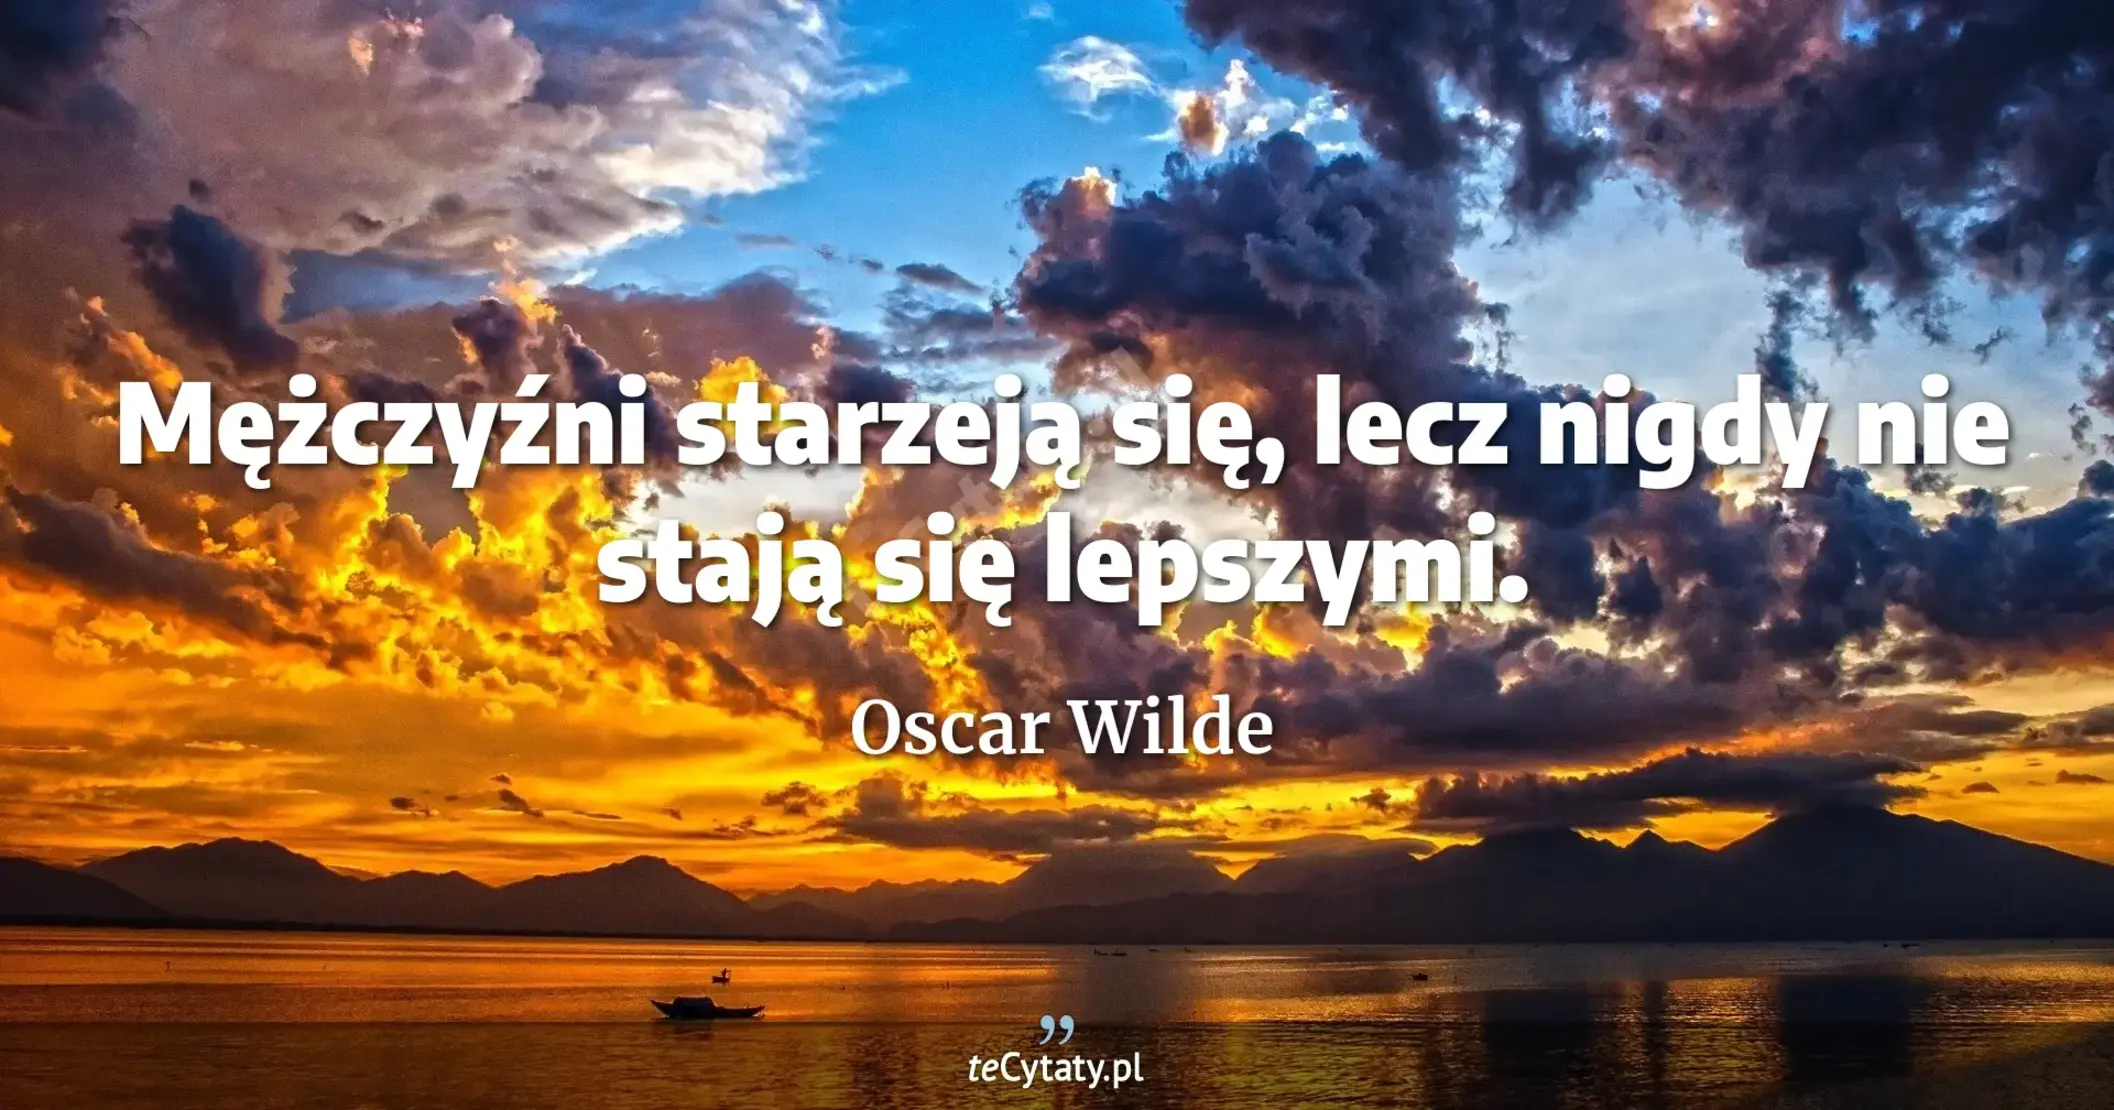 Mężczyźni starzeją się, lecz nigdy nie stają się lepszymi. - Oscar Wilde